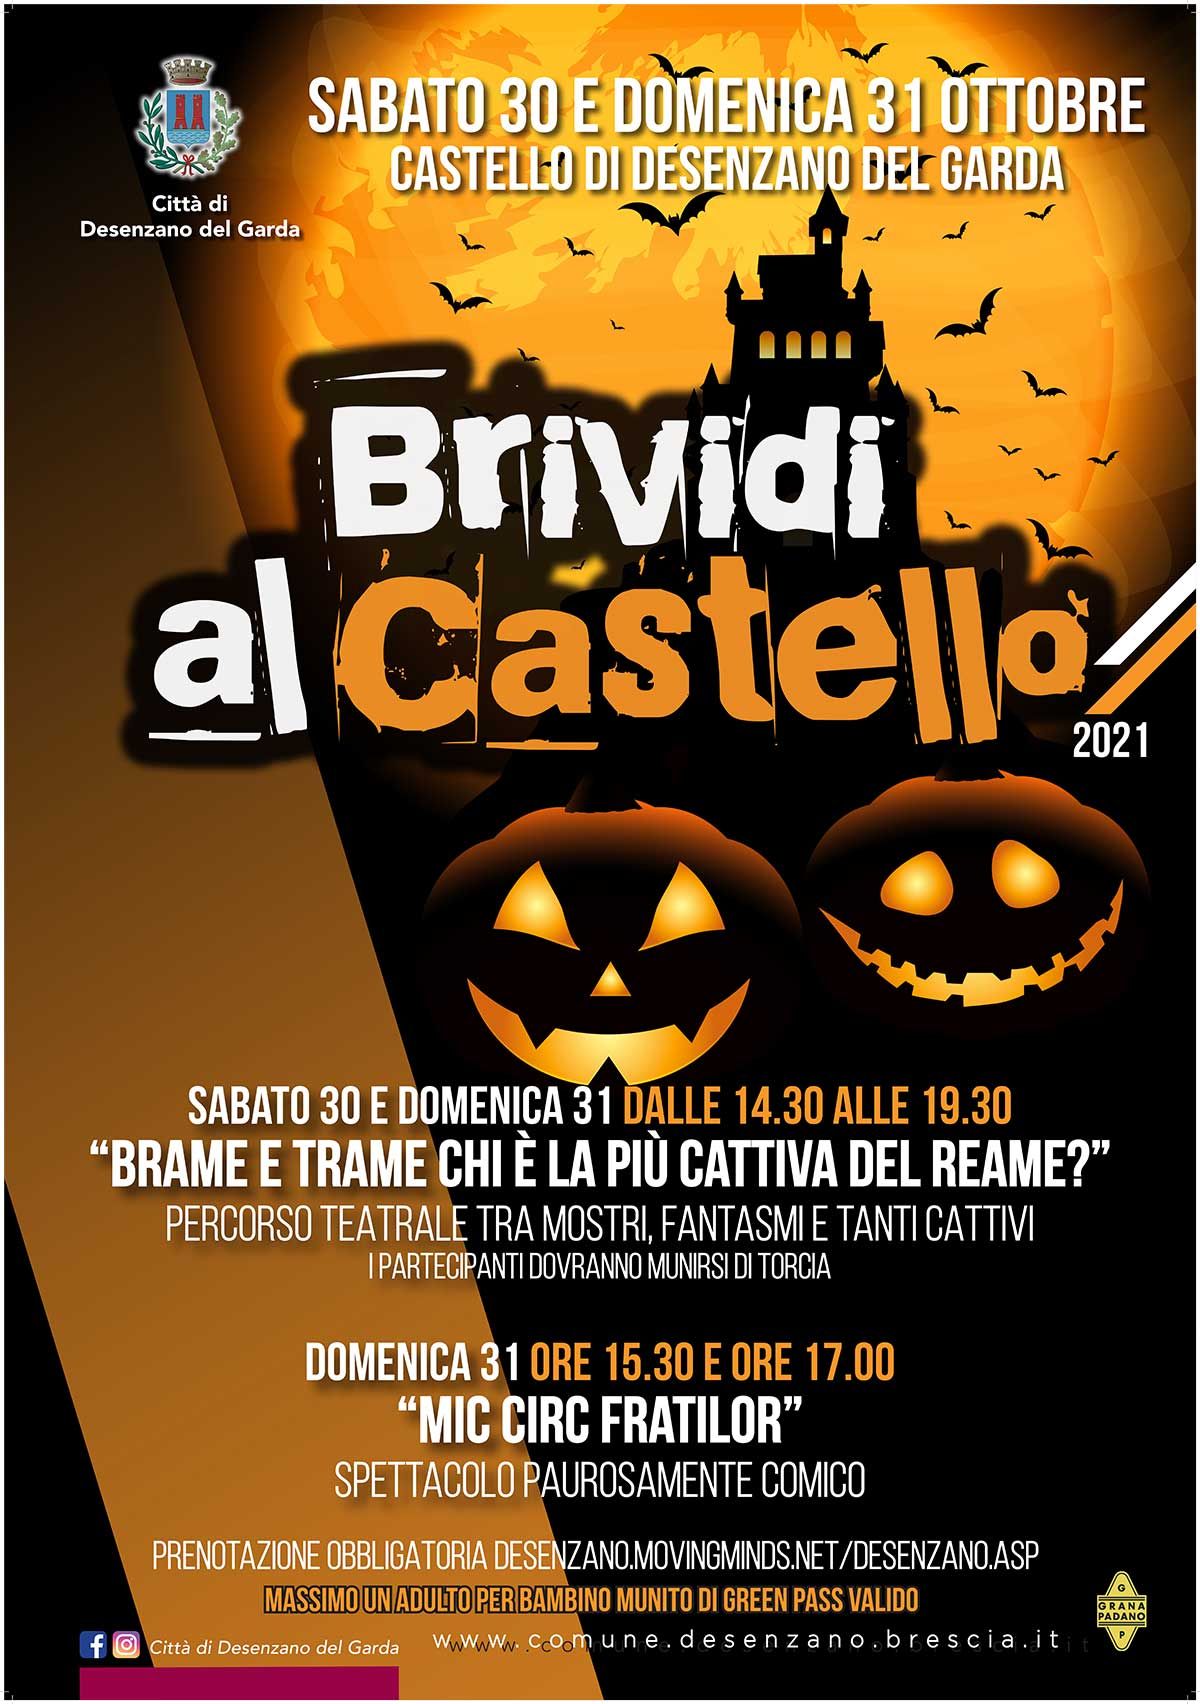 Desenzano-brividi-al-castello-halloween-2021-